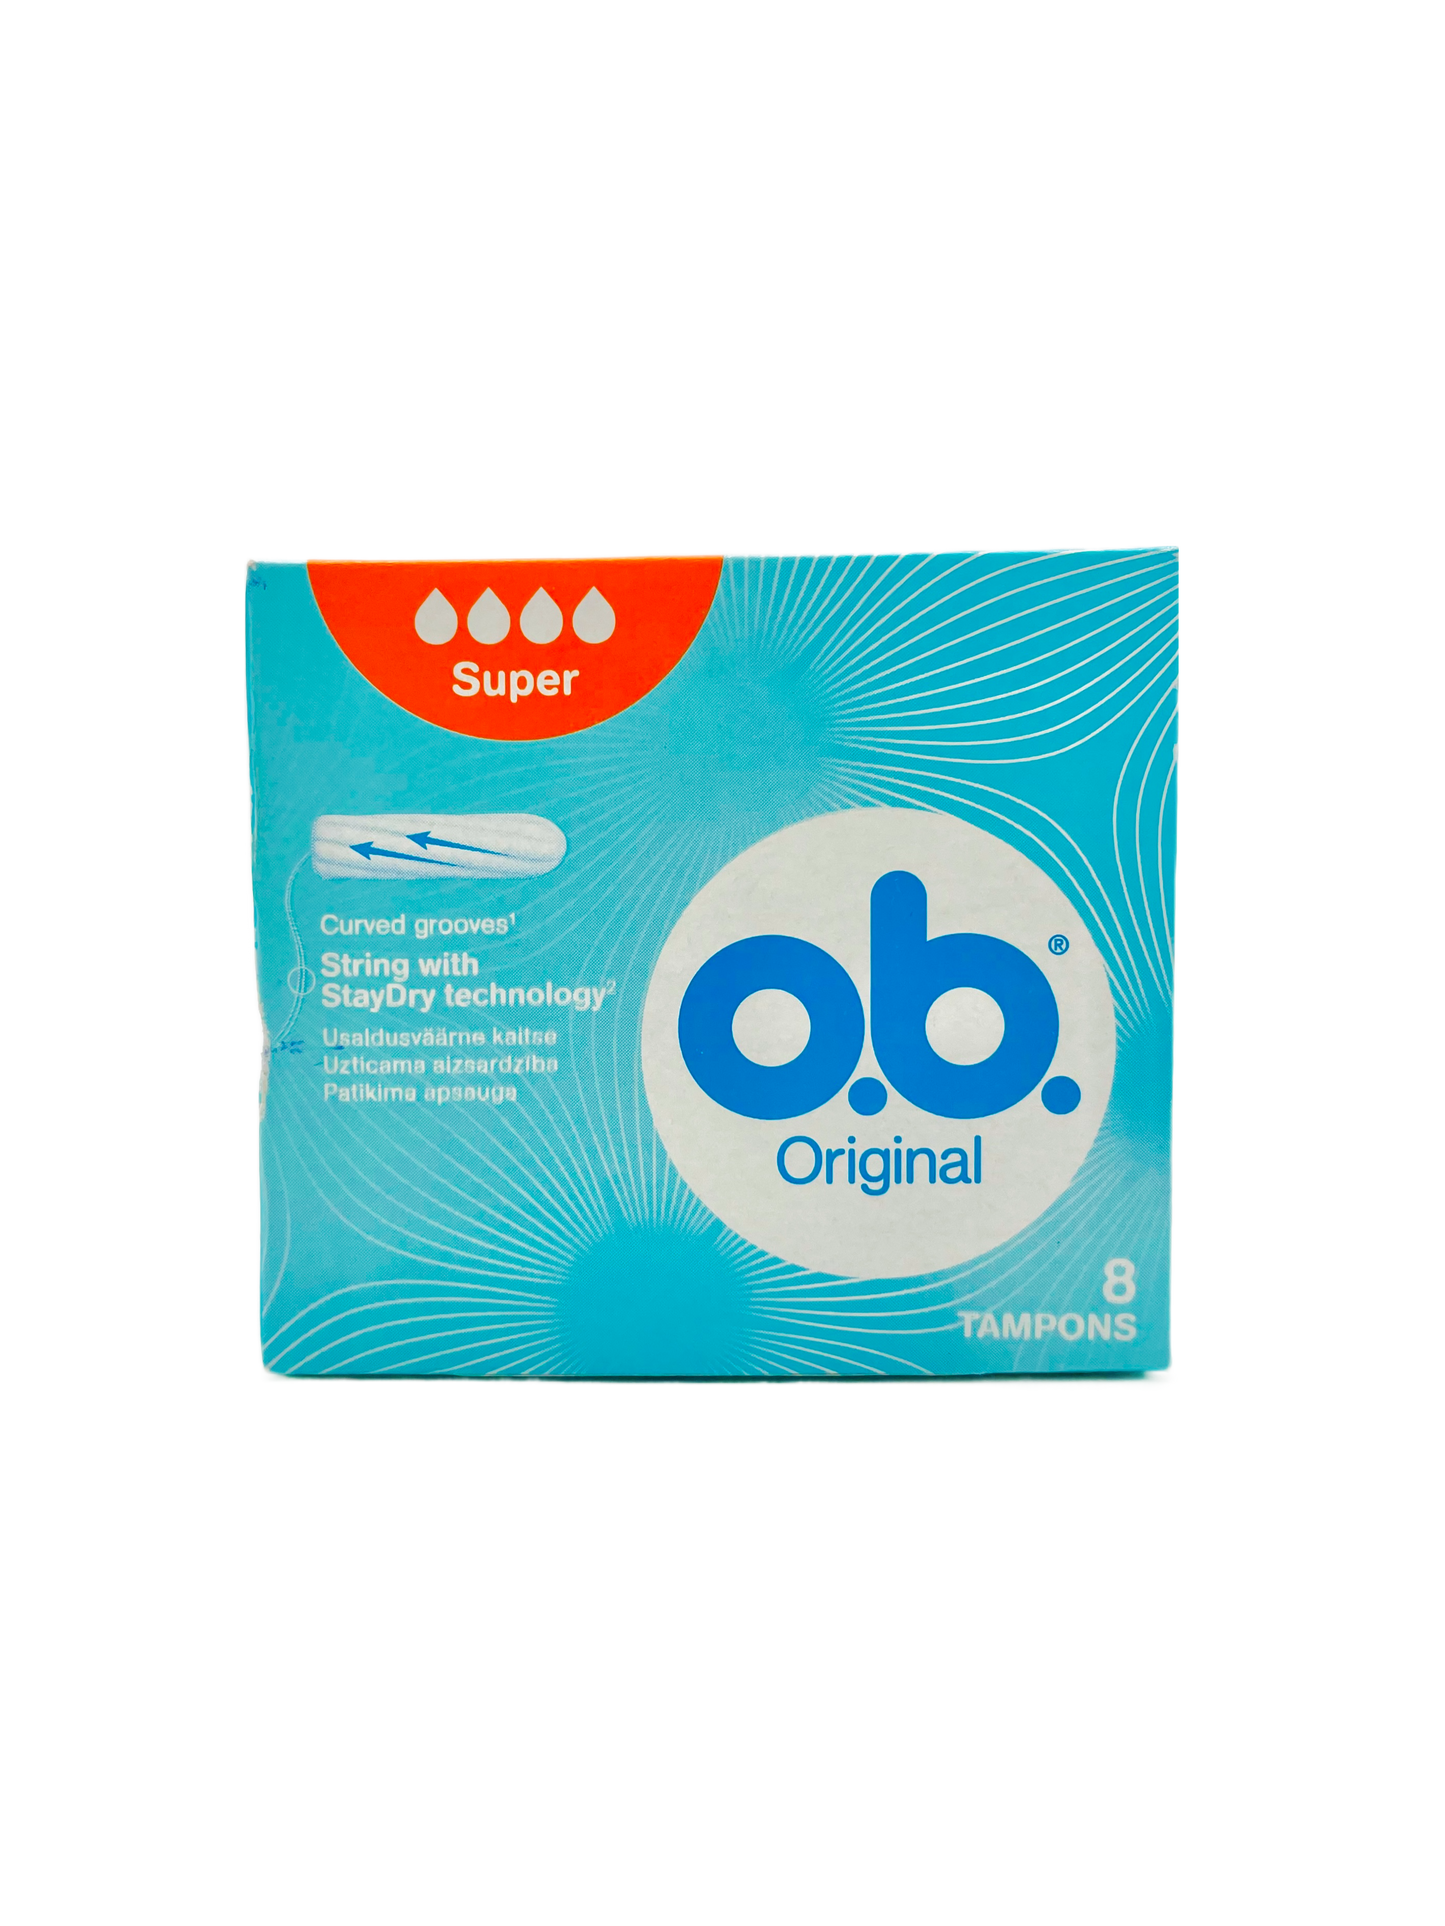 OB Original 8's - Super